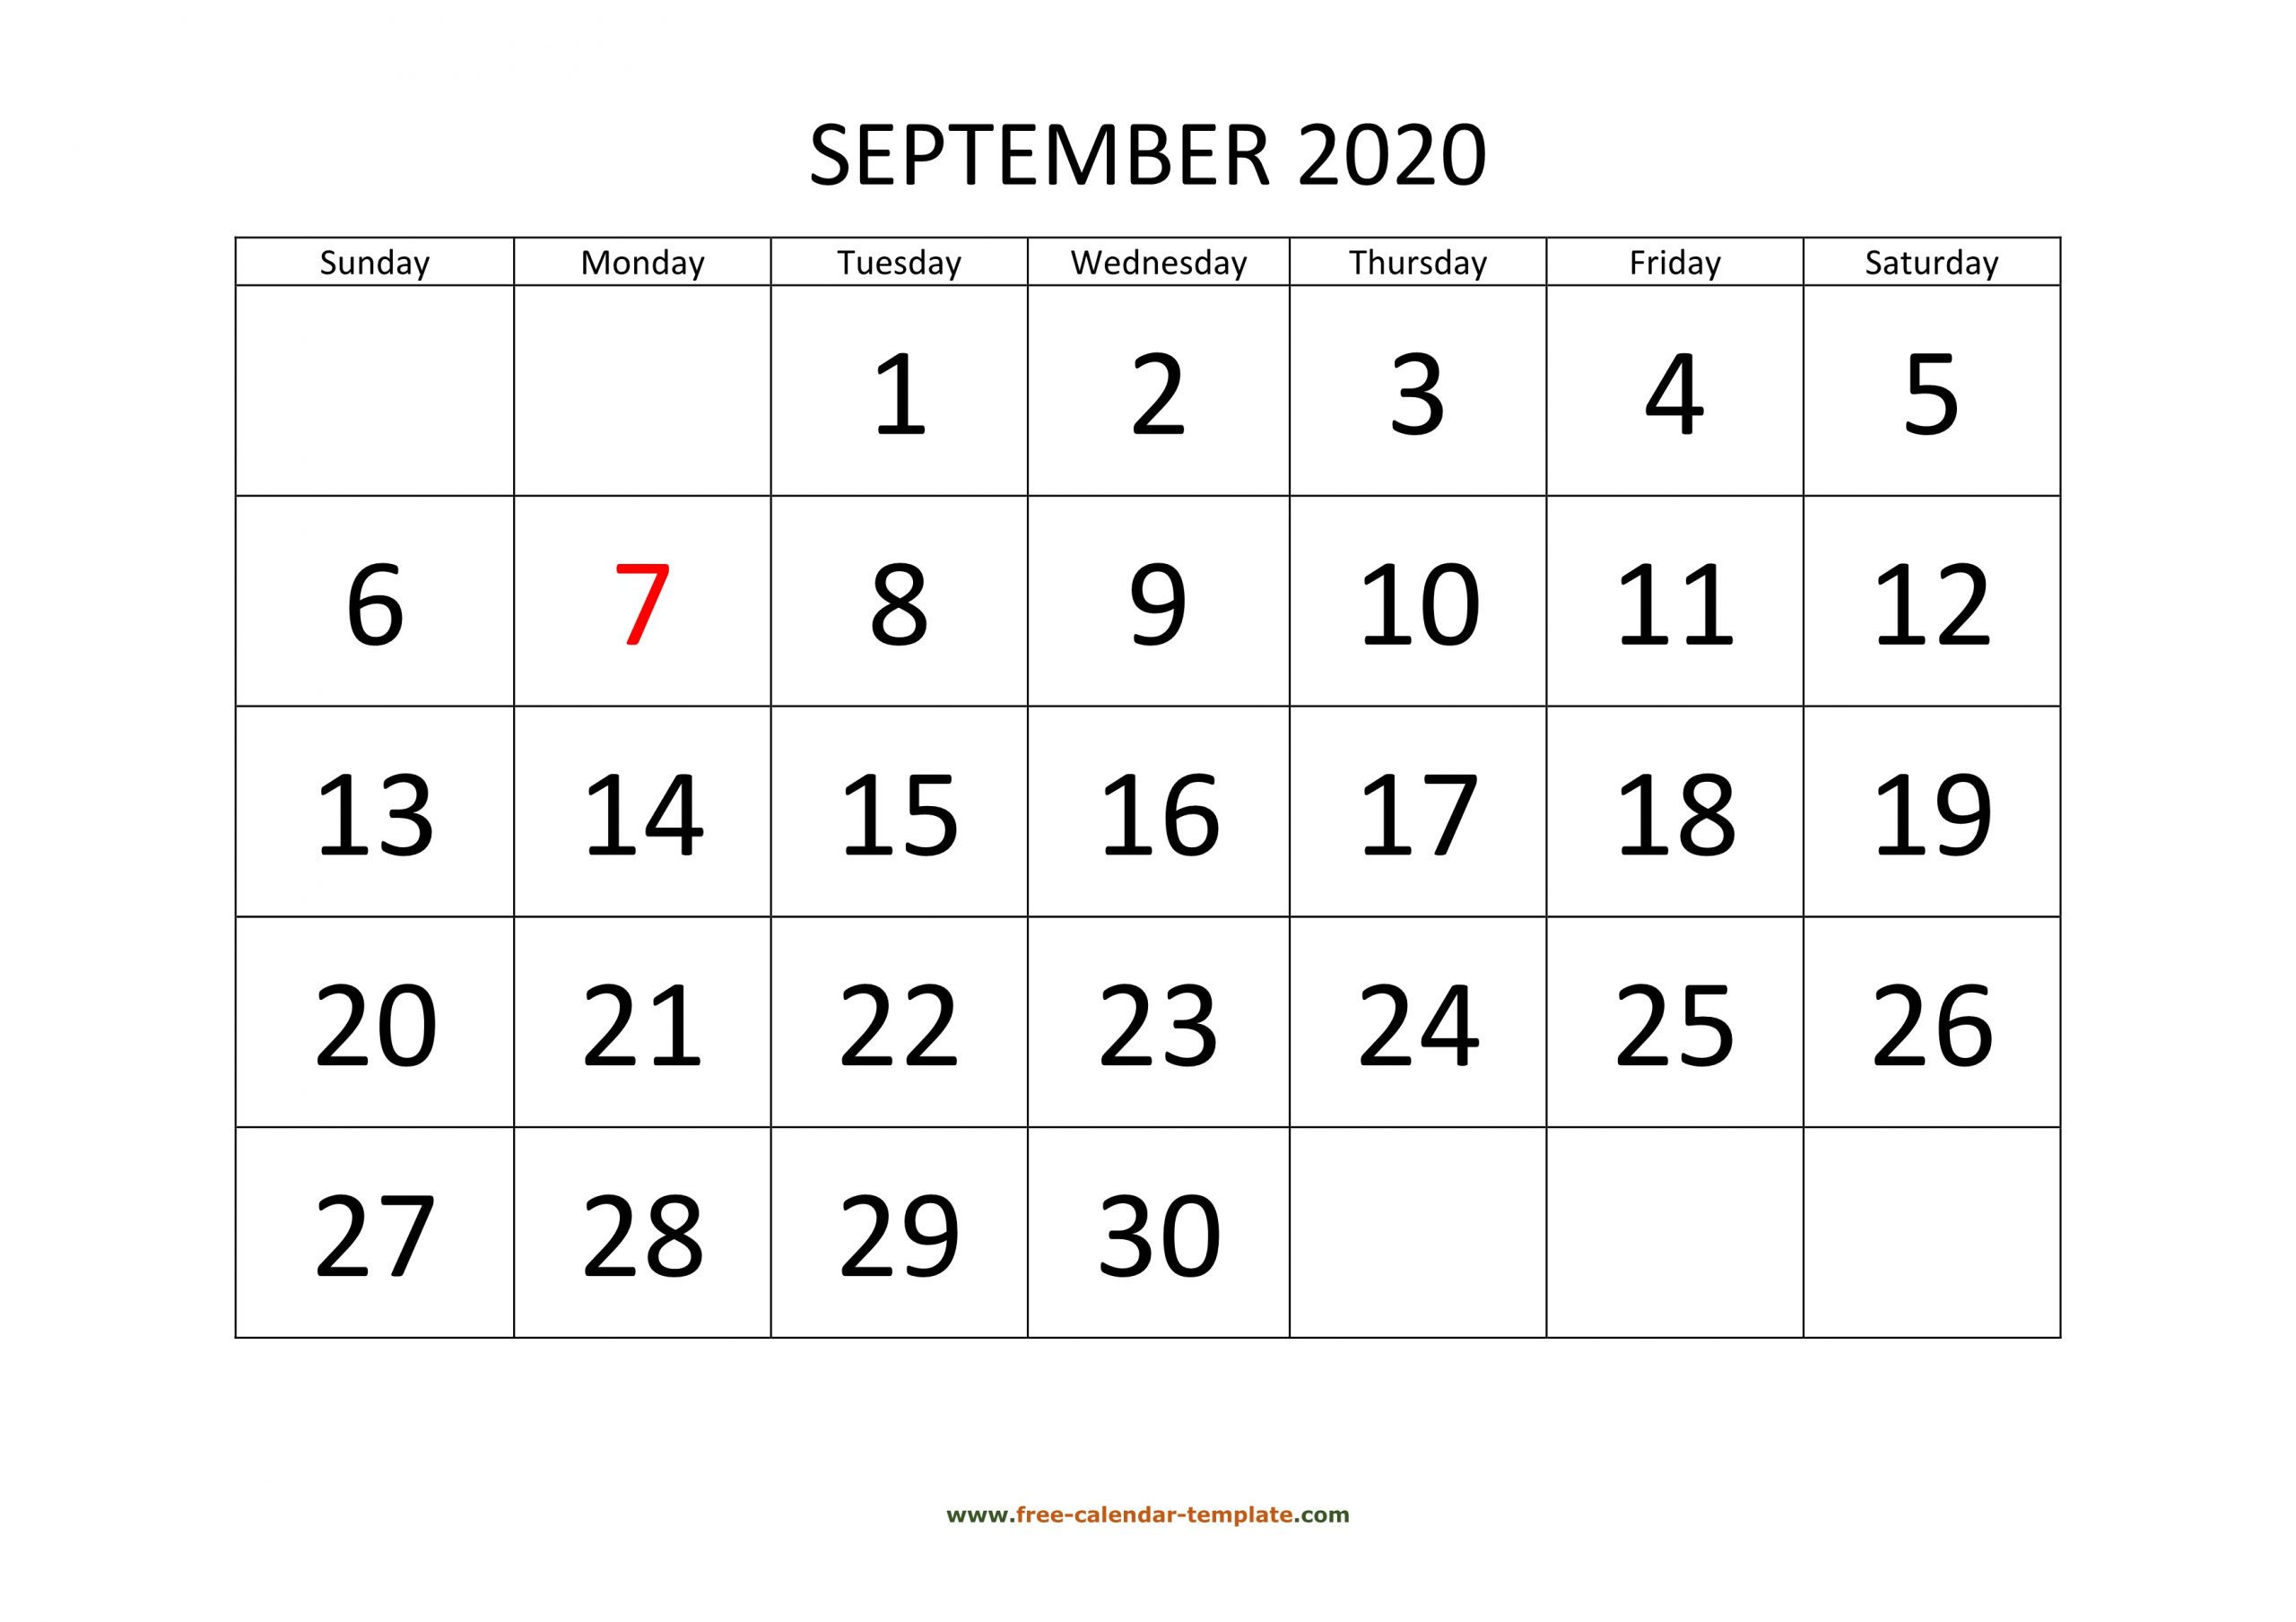 September 2020 Calendar Designed With Large Font (Horizontal